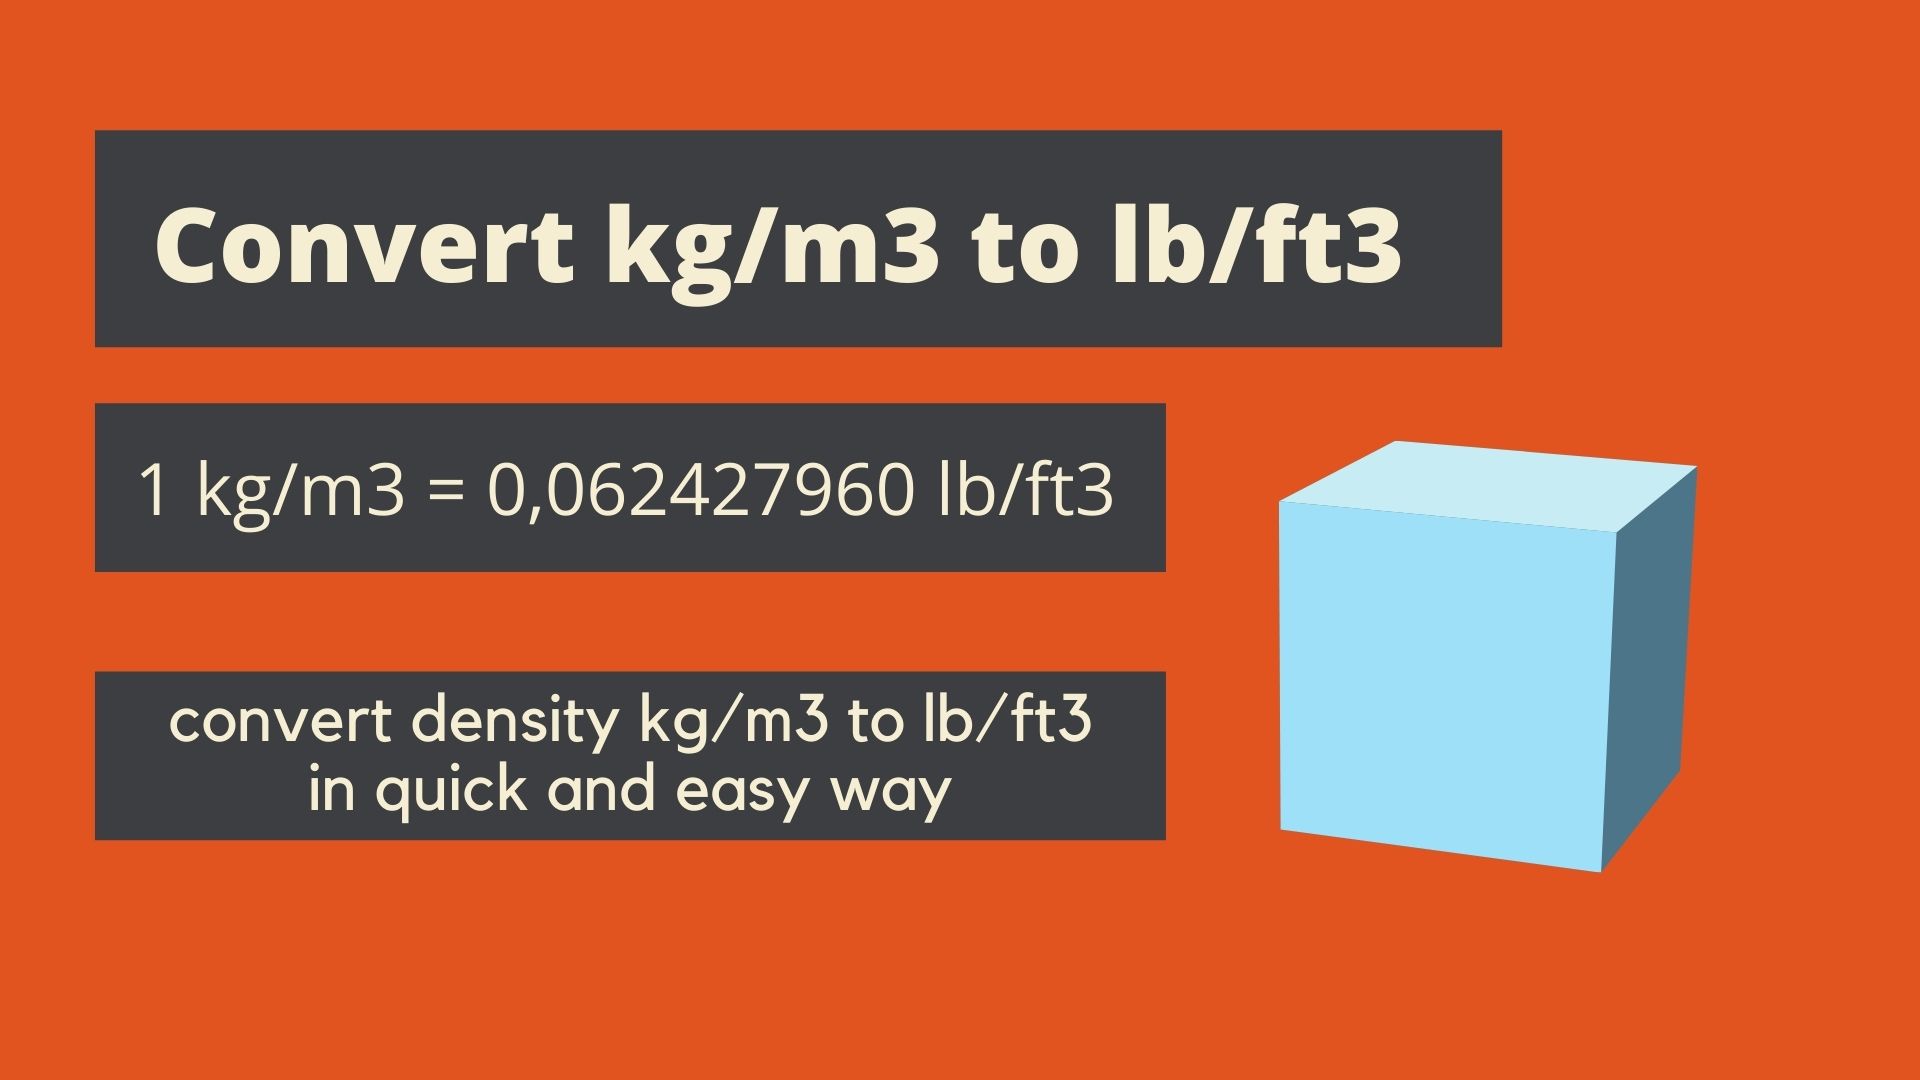 Convert kg/m3 to lb/ft3